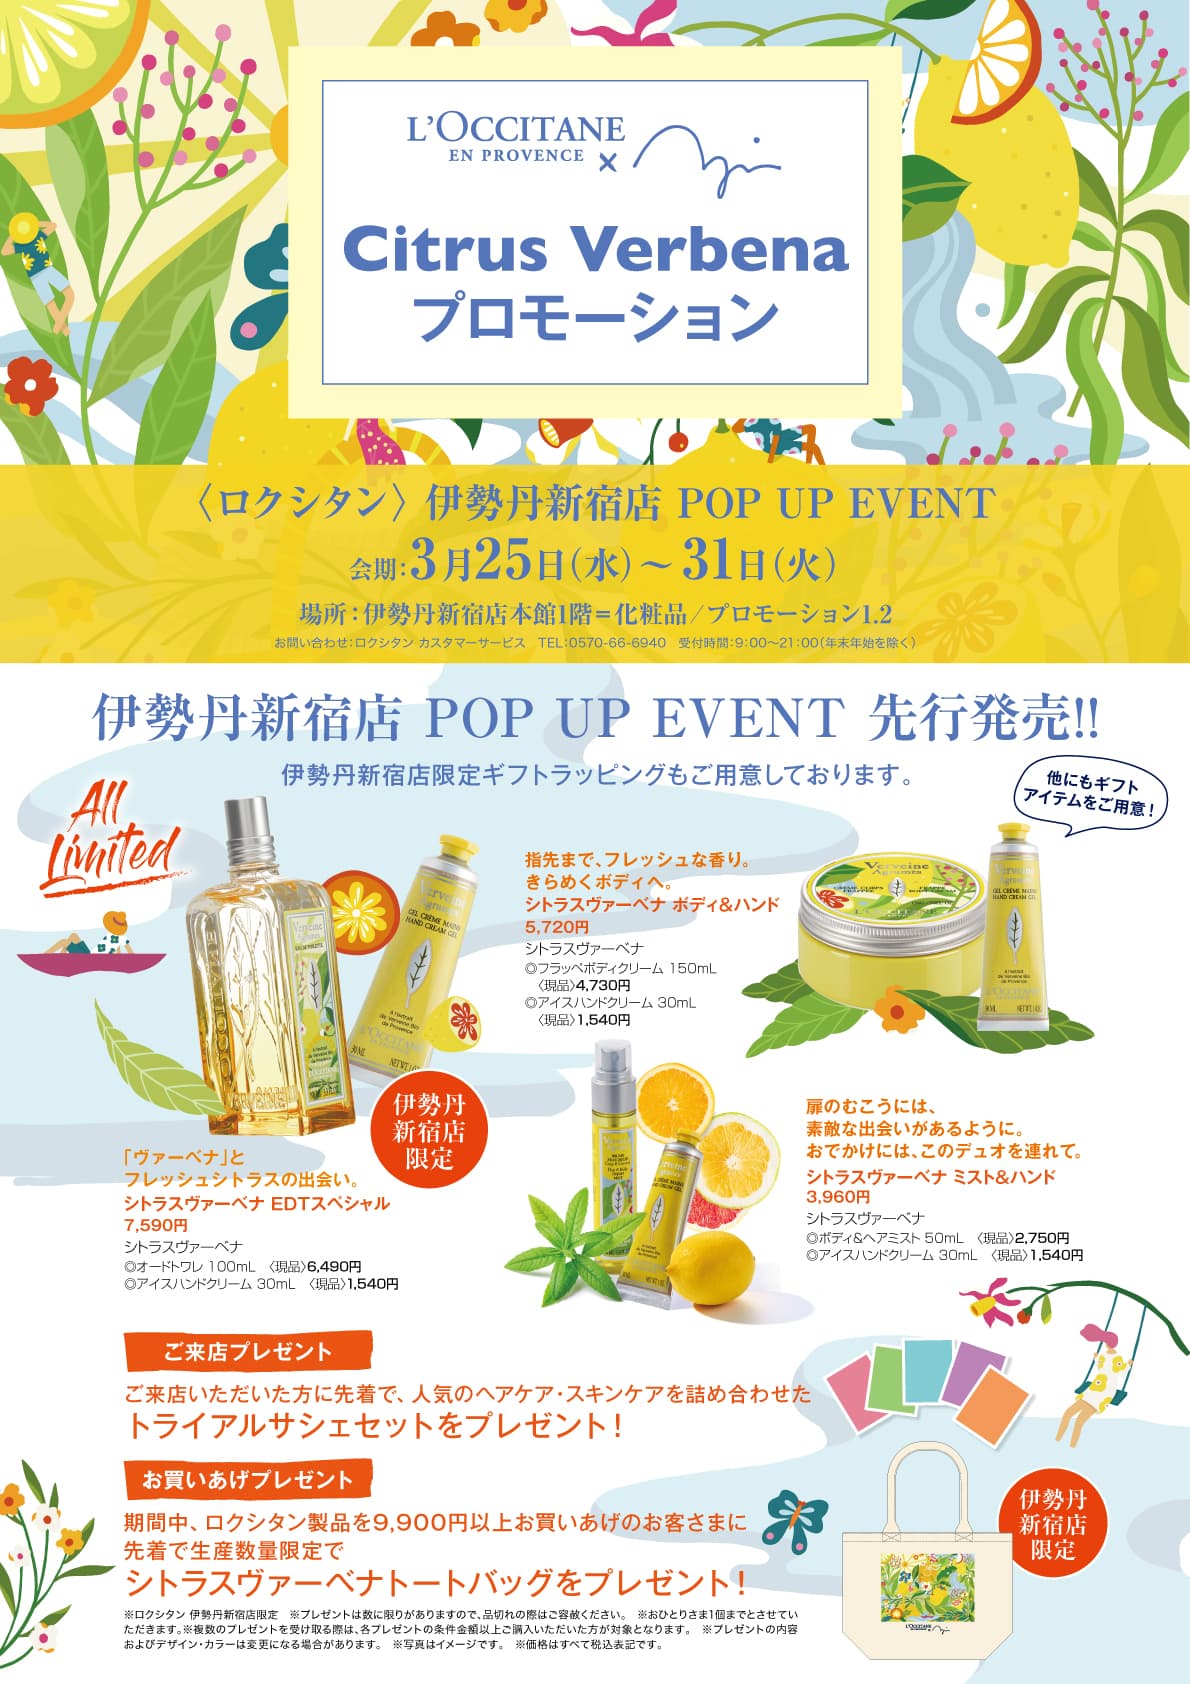 年3月25日 水 31日 火 ロクシタン 伊勢丹新宿店にてpop Up Eventを開催 ロクシタン公式通販